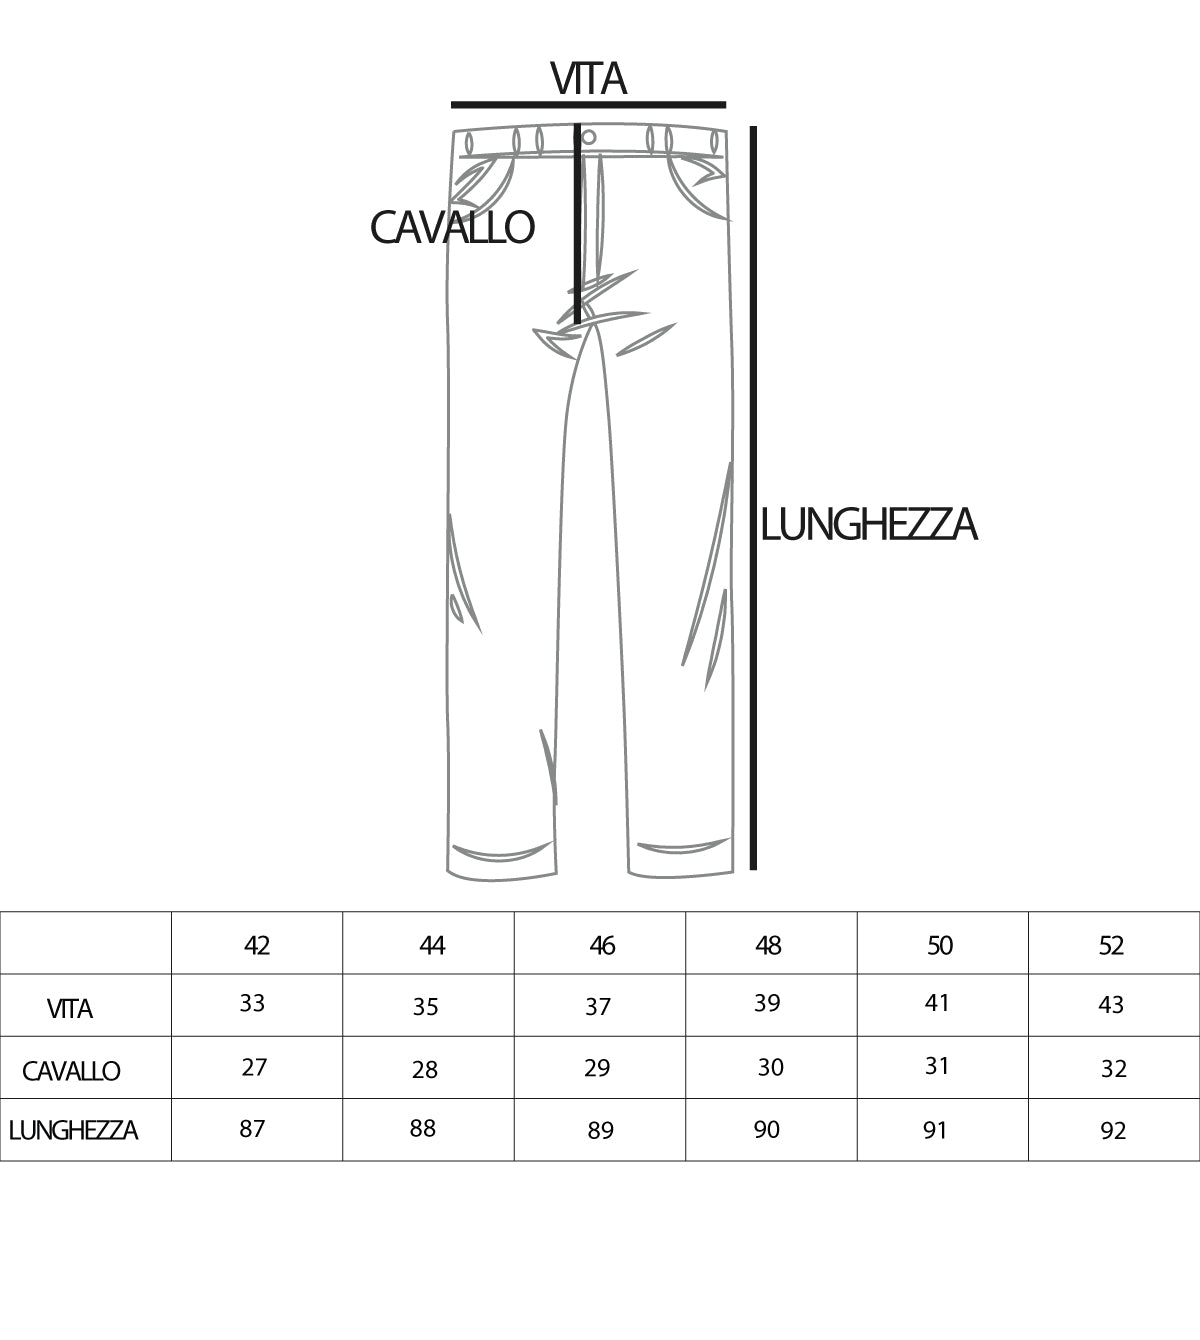 Pantaloni Jeans Uomo Loose Fit Sfumato Denim Cinque Tasche GIOSAL-P3624A